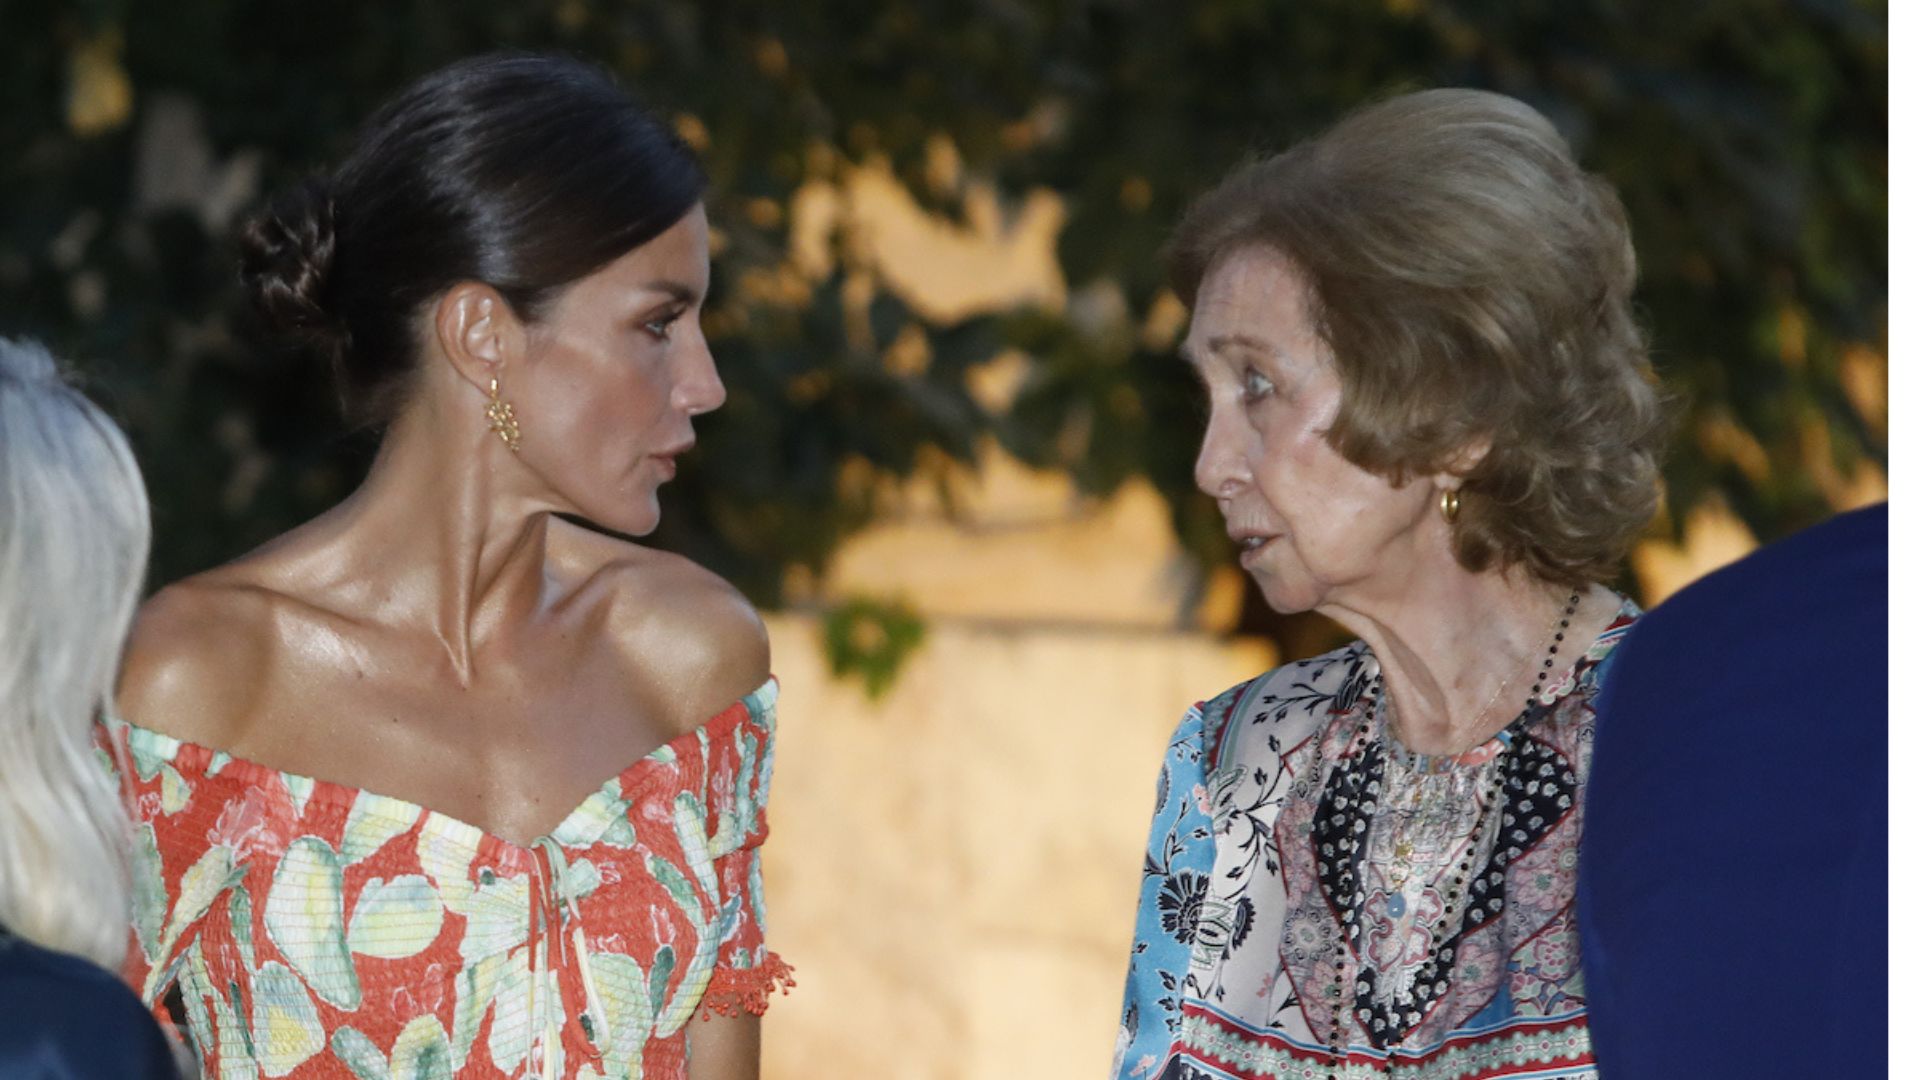 Cuchicheos y miradas cómplices: el buen rollo entre Letizia y Doña Sofía en Palma de Mallorca